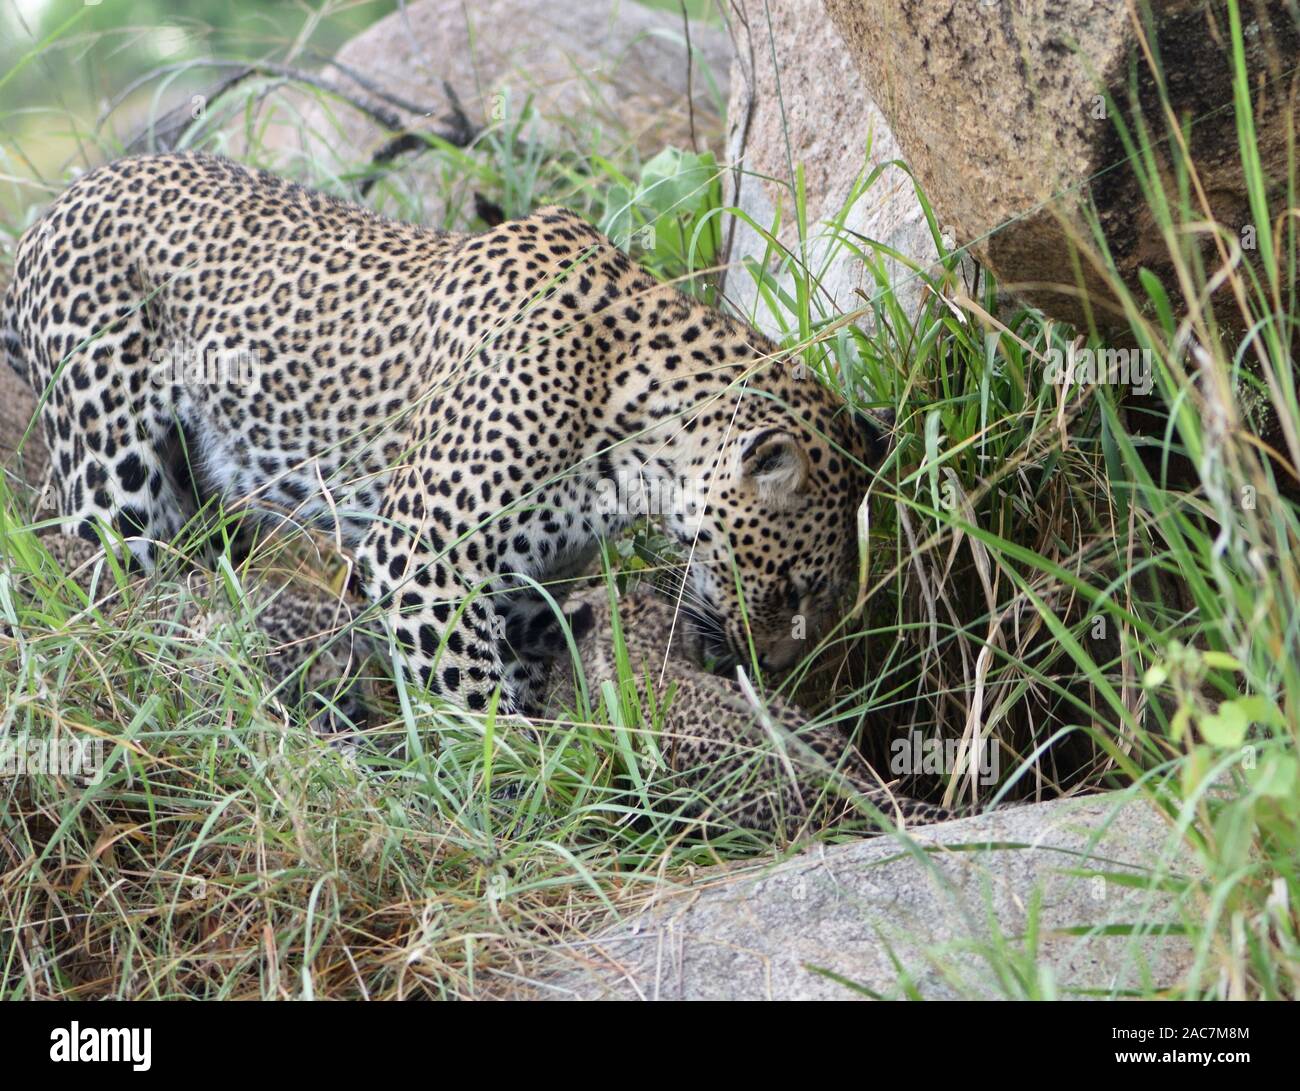 Une femelle léopard (Panthera pardus) appelle ses deux très jeunes Louveteaux, les yeux toujours bleu, à partir de leur tanière. Parc national de Serengeti, Tanzanie. Banque D'Images